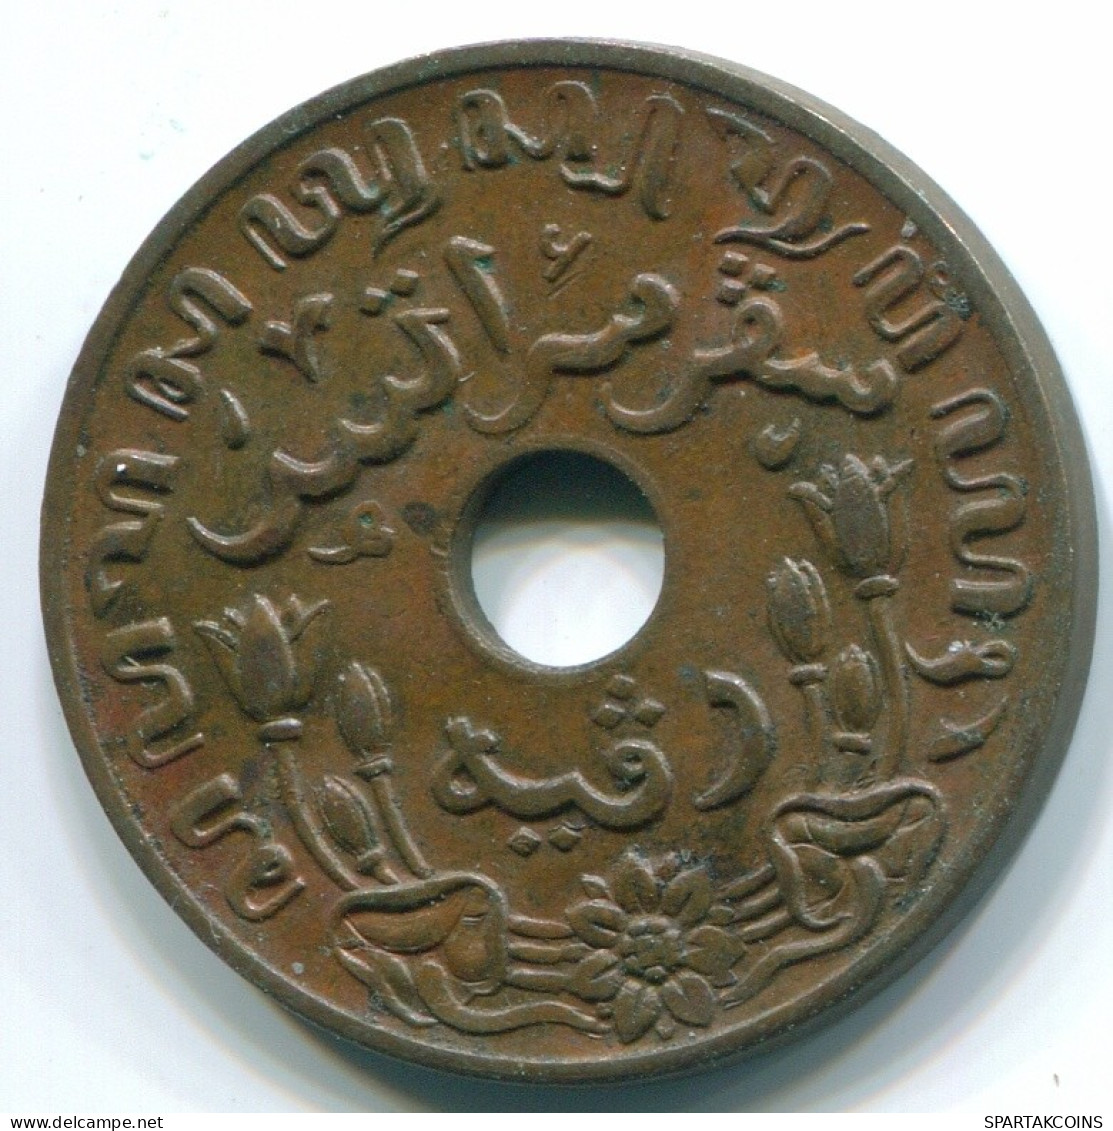 1 CENT 1945 P NIEDERLANDE OSTINDIEN INDONESISCH Koloniale Münze #S10427.D.A - Niederländisch-Indien